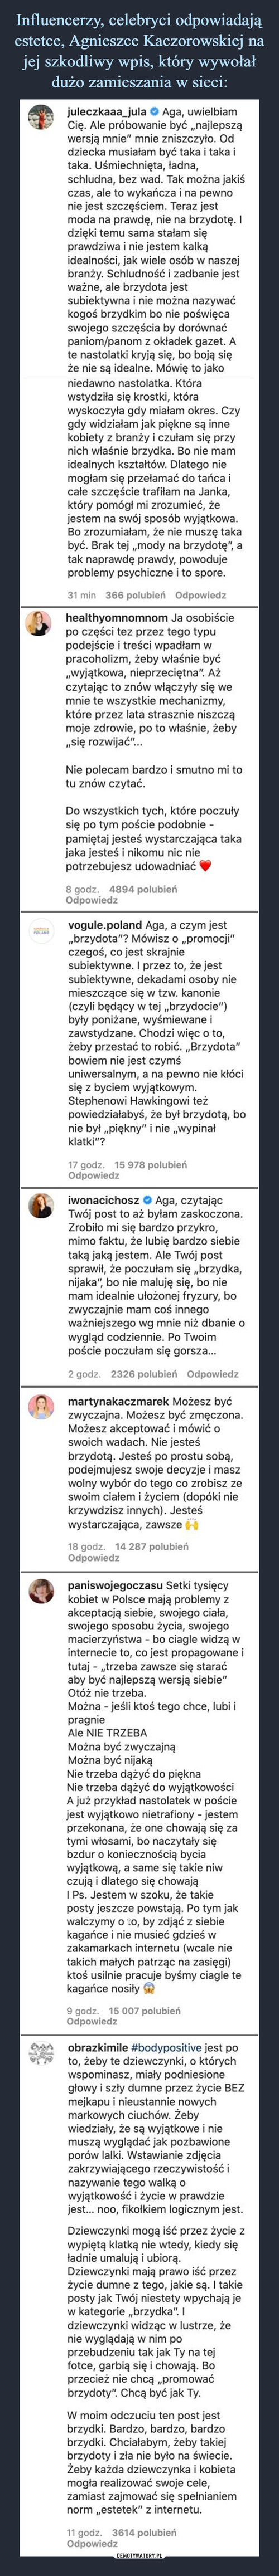 Influencerzy, celebryci odpowiadają estetce, Agnieszce Kaczorowskiej na jej szkodliwy wpis, który wywołał dużo zamieszania w sieci: